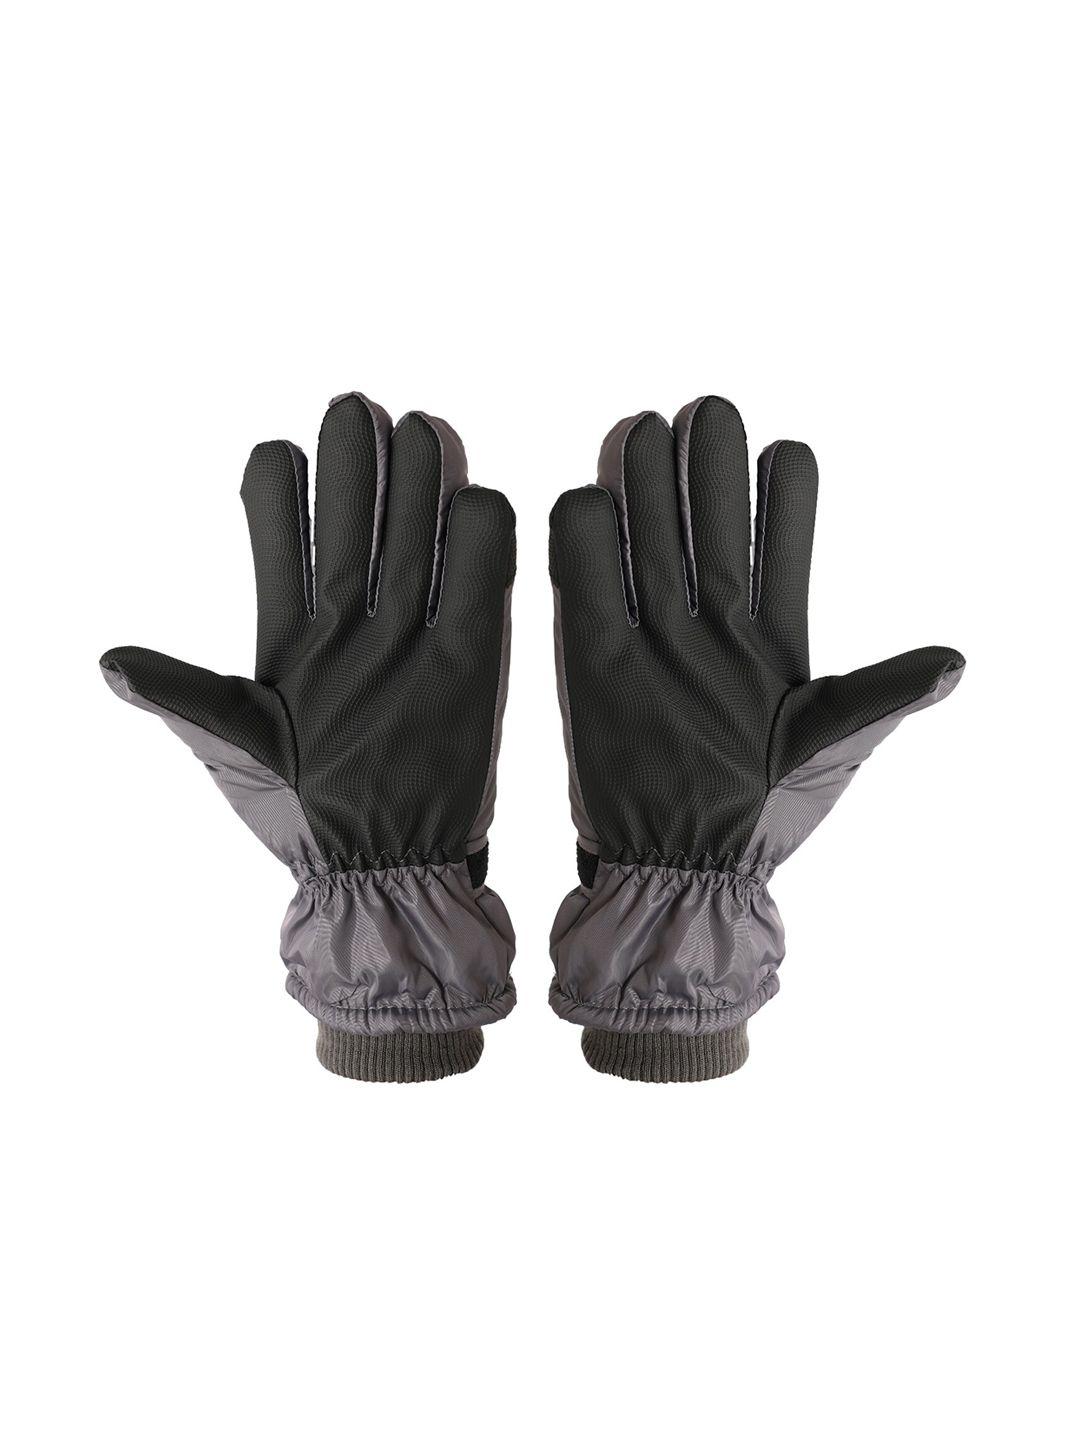 fabseasons grey printed waterproof winter gloves